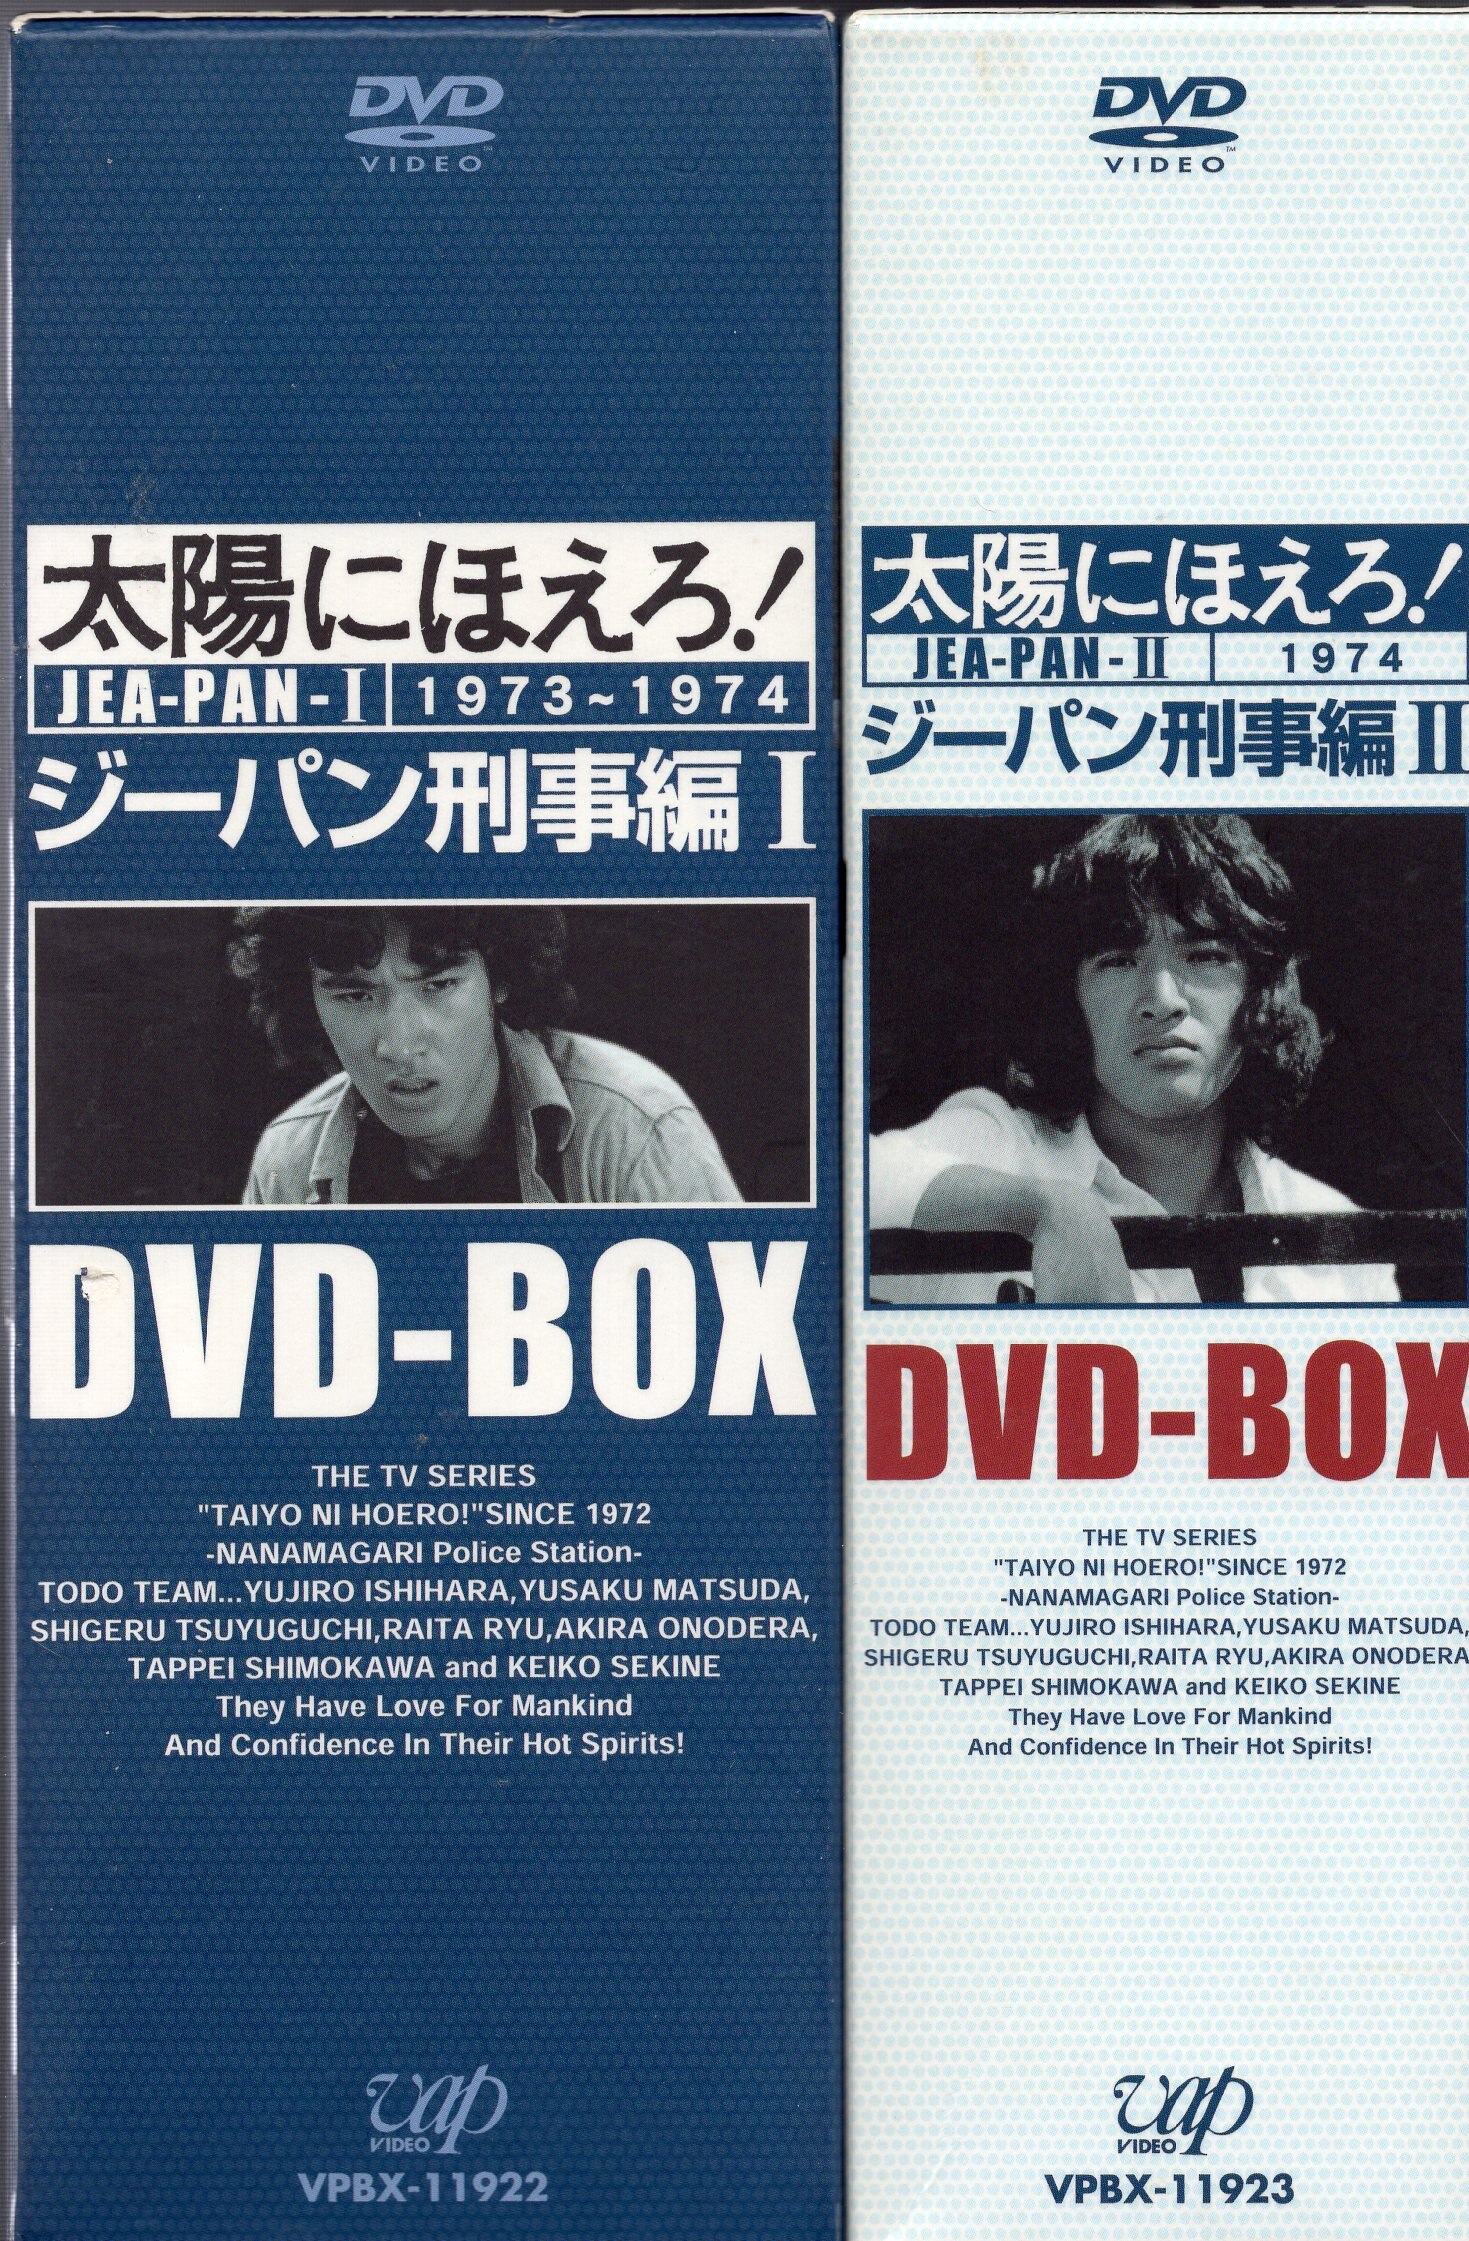 太陽にほえろ! ジーパン刑事編Ⅰ DVD-BOX〈初回限定生産・9枚組〉+